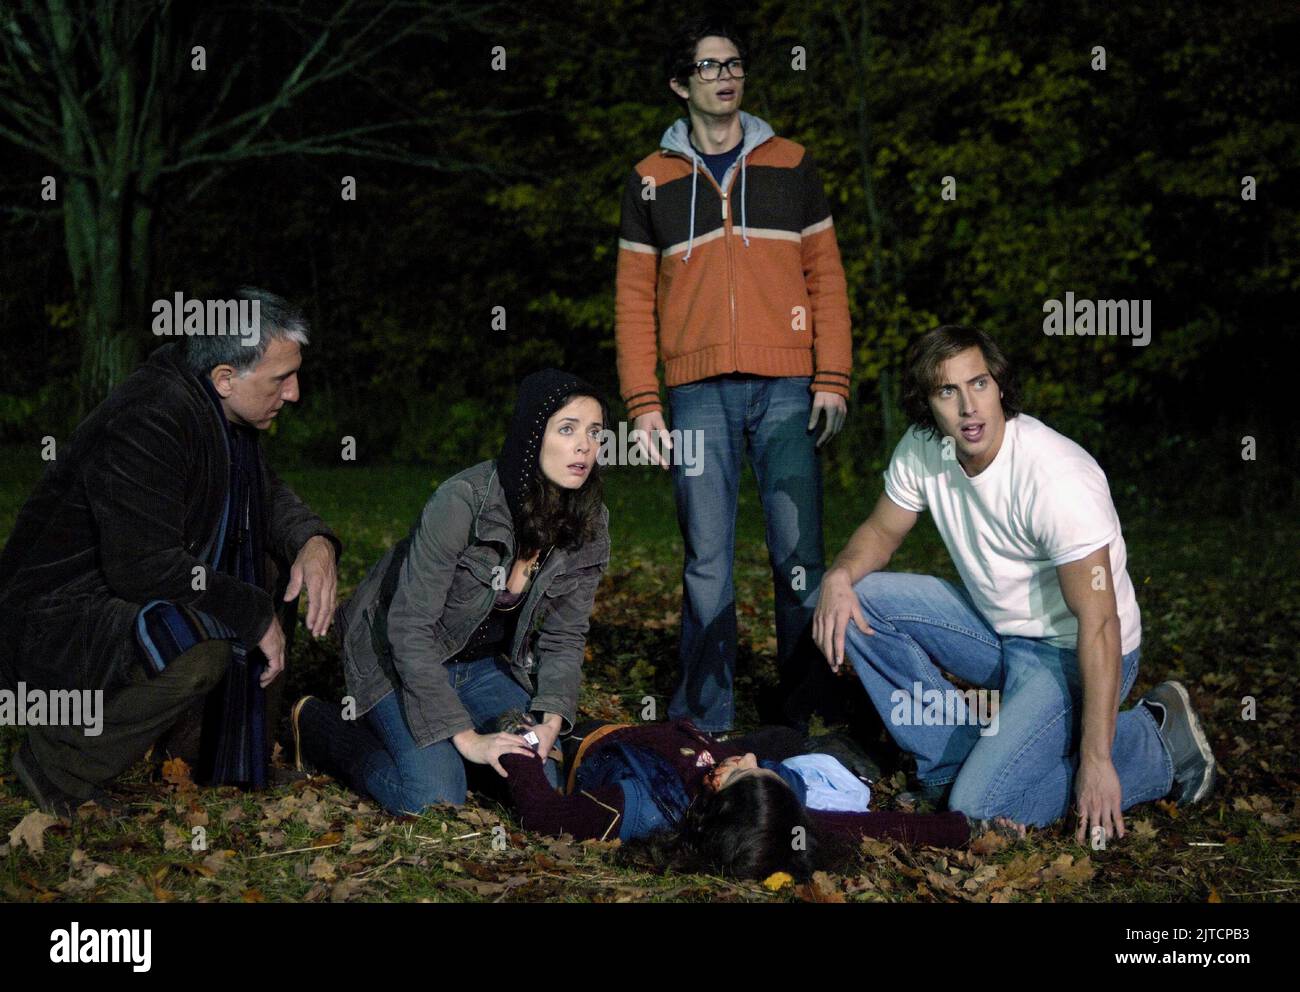 SCOTT WENTWORTH, MICHELLE MORGAN, JOE DINICOL, CHRIS VIOLETTE, DIARY OF THE DEAD, 2007 Stock Photo